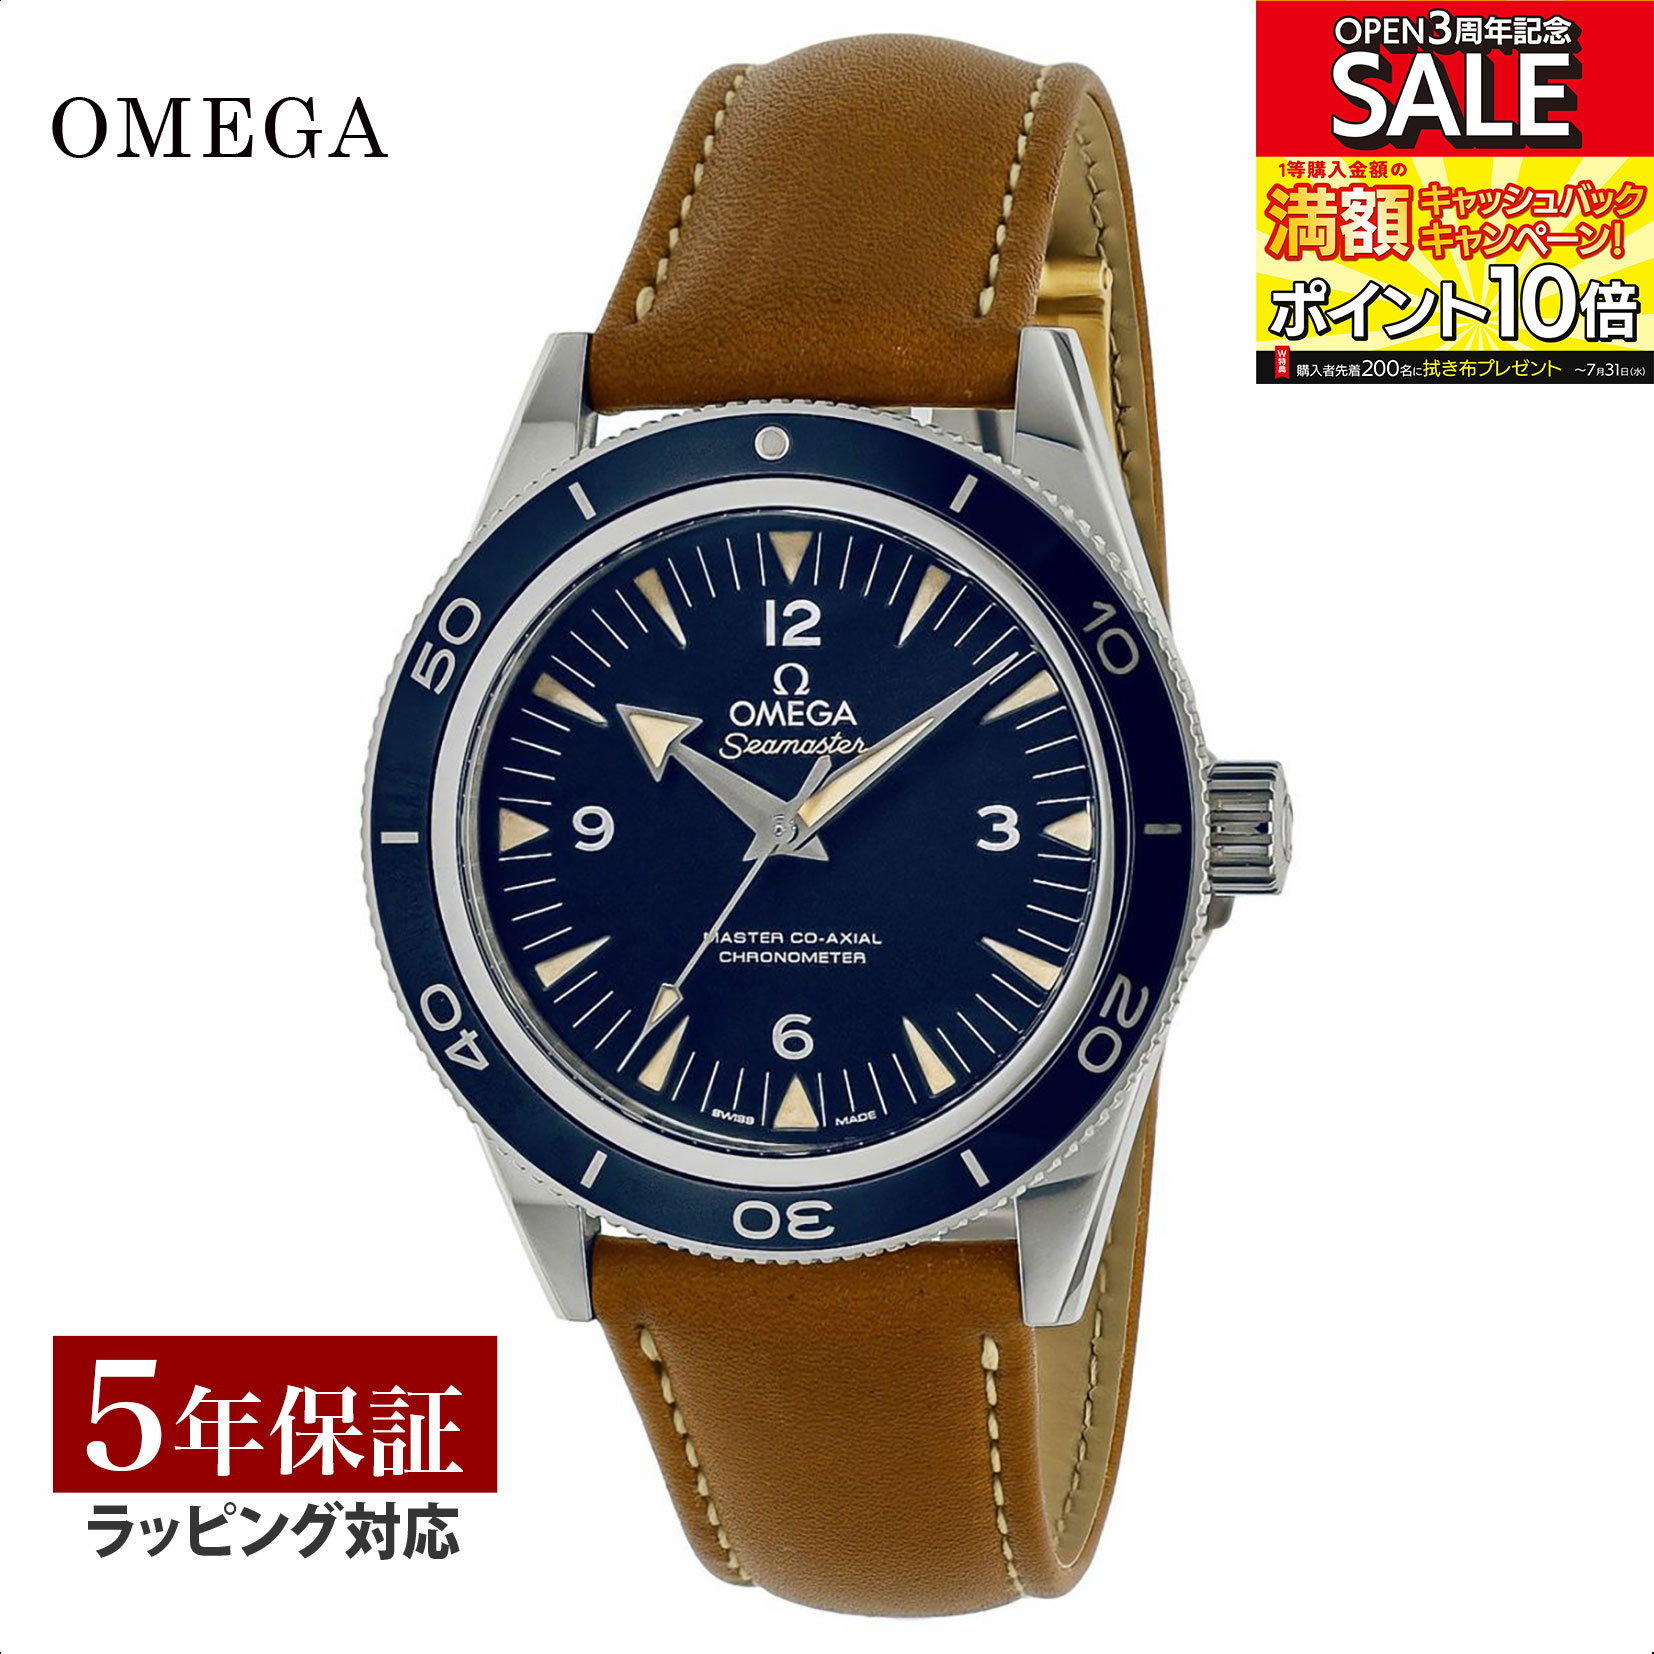 シーマスター OMEGA オメガ シーマスター 300 自動巻 メンズ ブルー 233.92.41.21.03.001 時計 腕時計 高級腕時計 ブランド